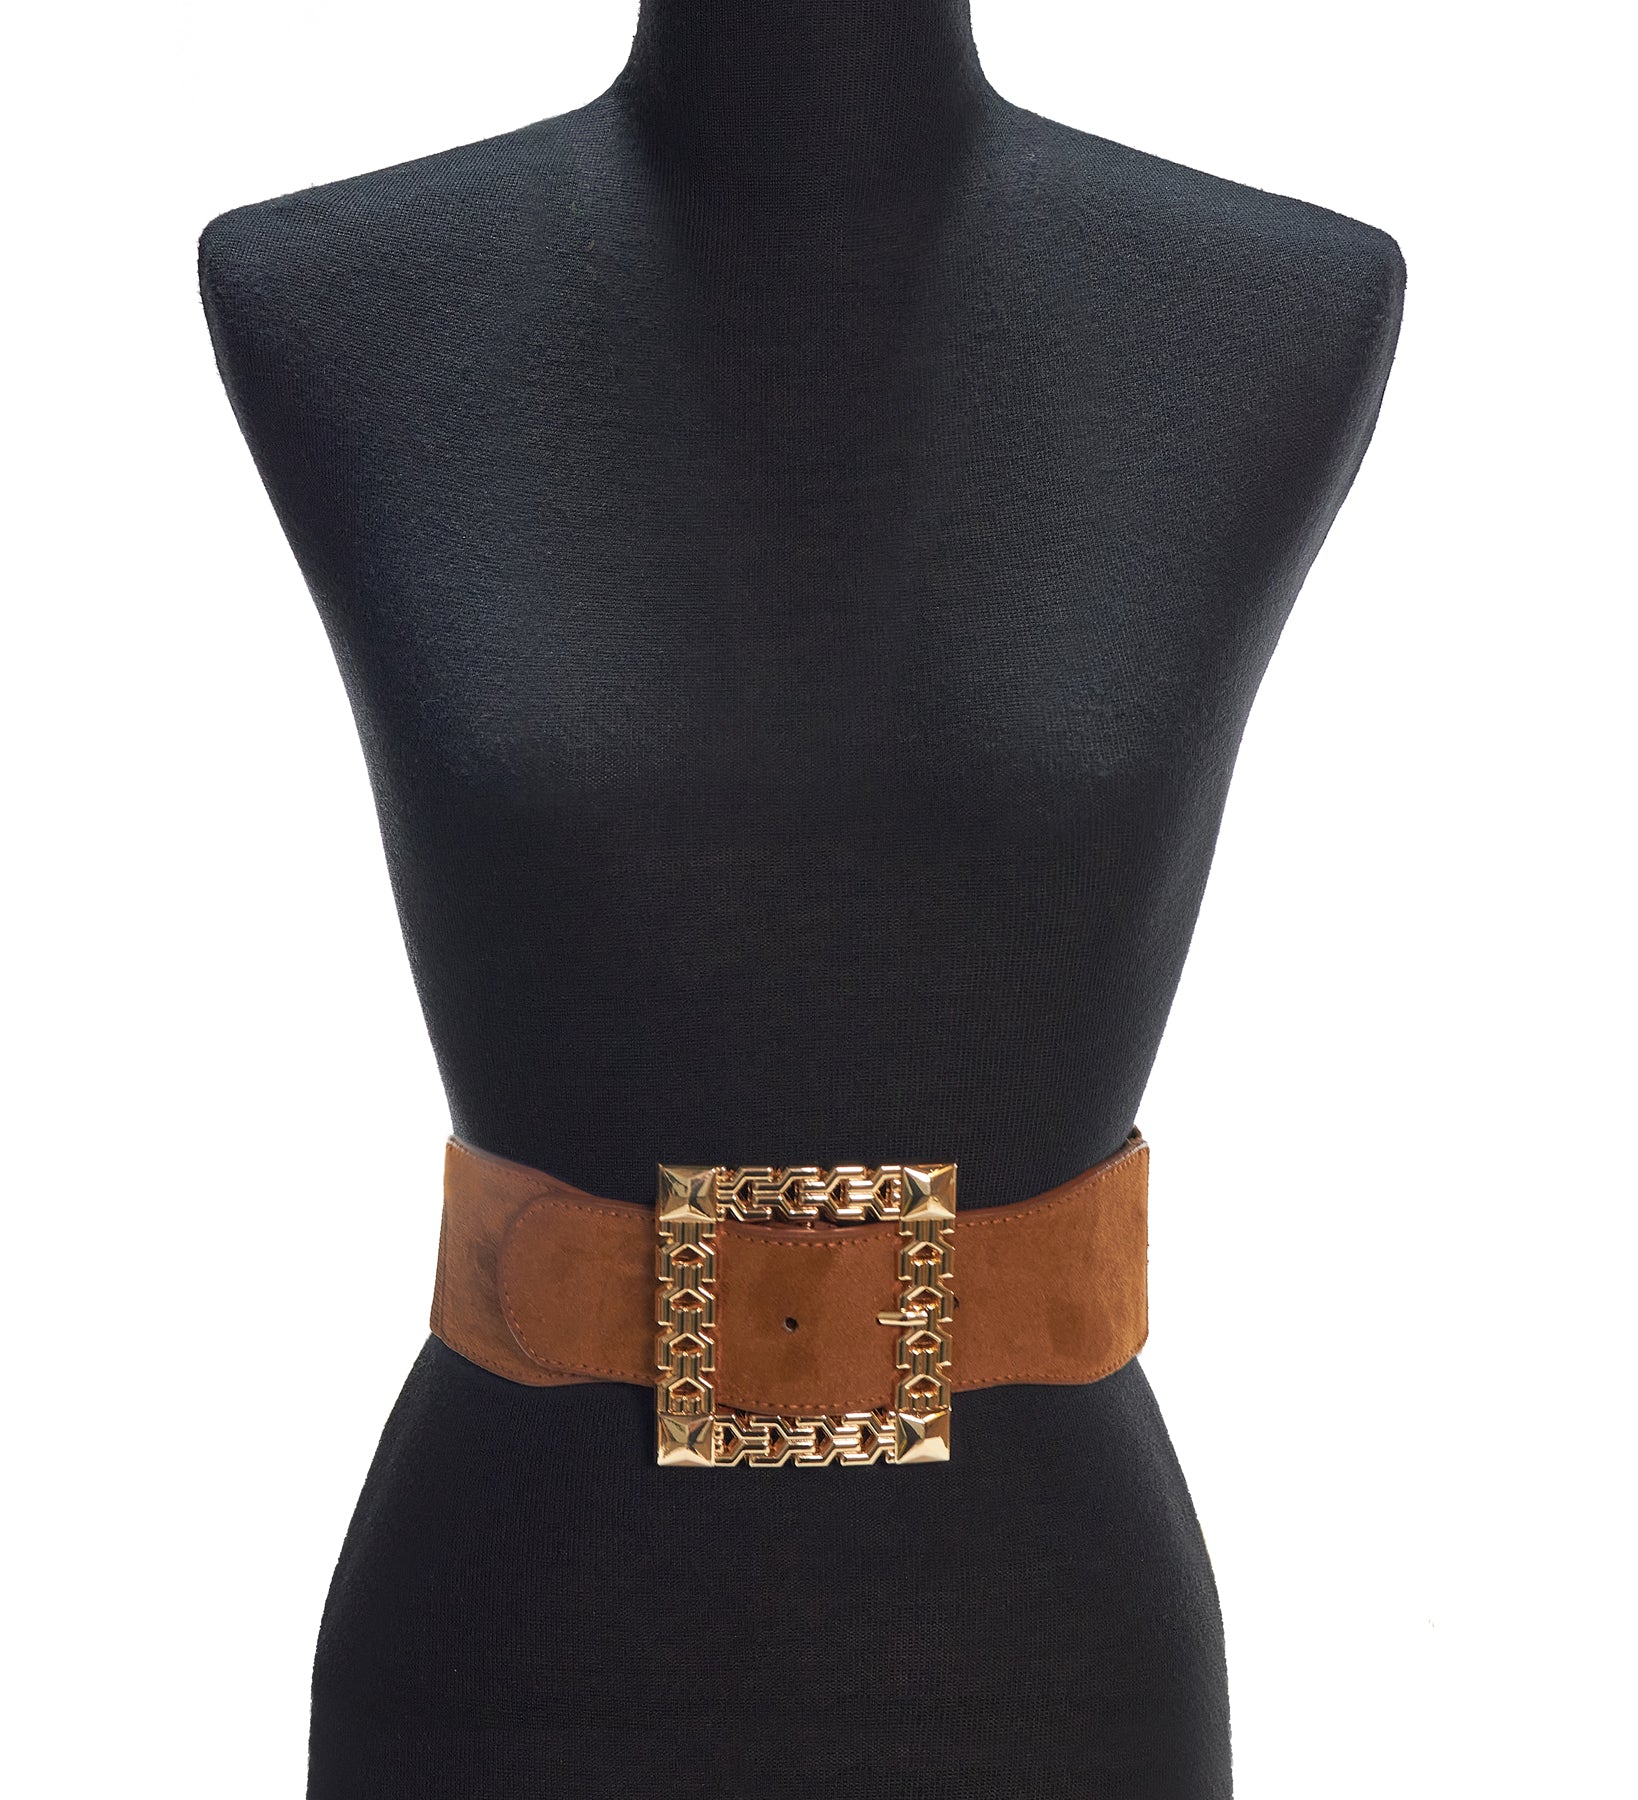 Les Nana Fashion Belts-Women's Fashion Belts Online